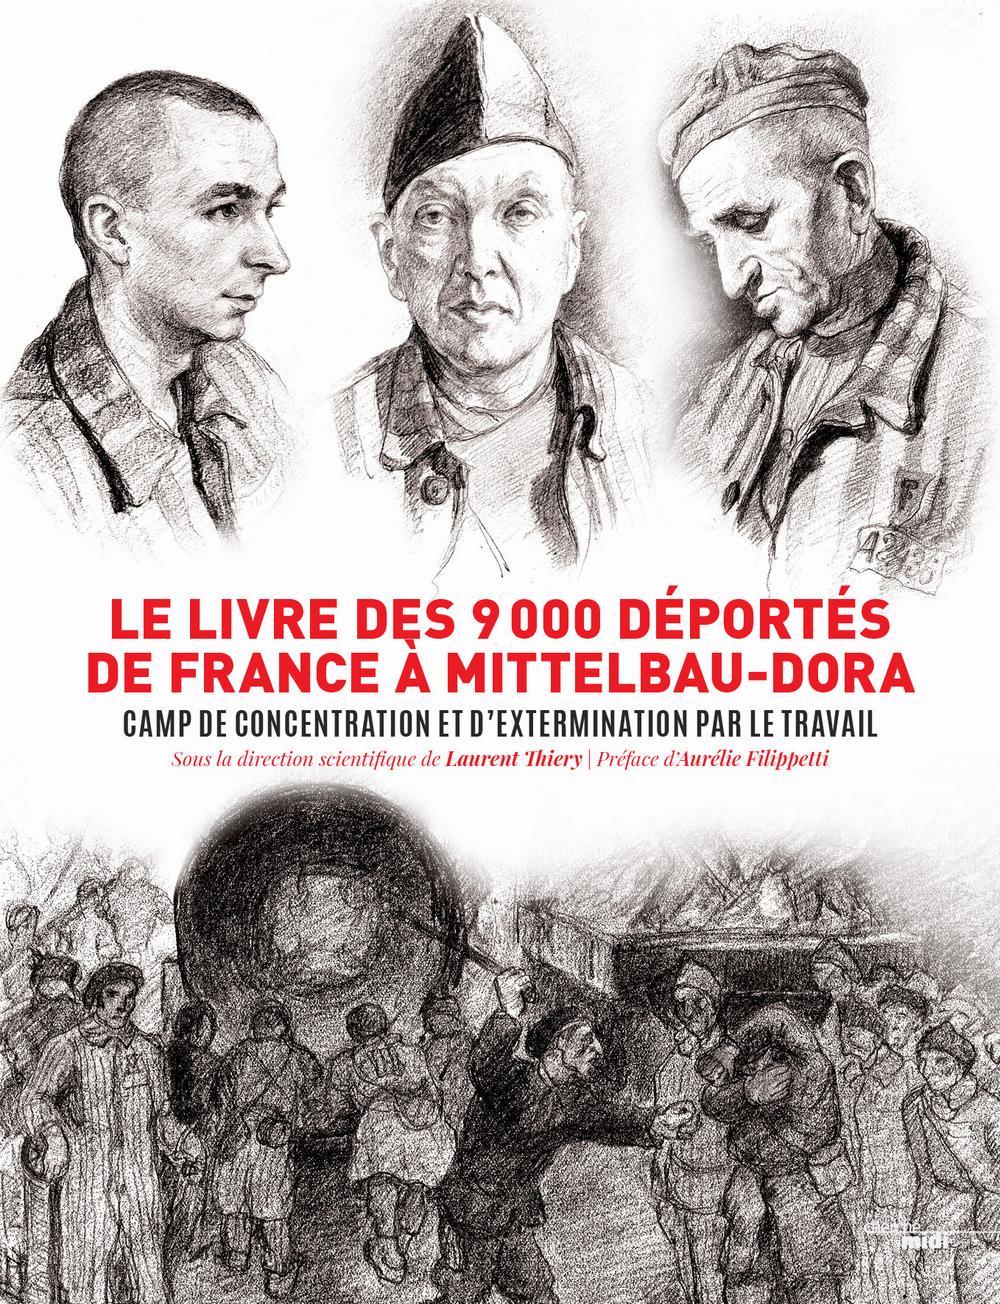 Le livre des 9000 déportés de France à Mittelbau-Dora : camp de concentration et dextermination par le travail.